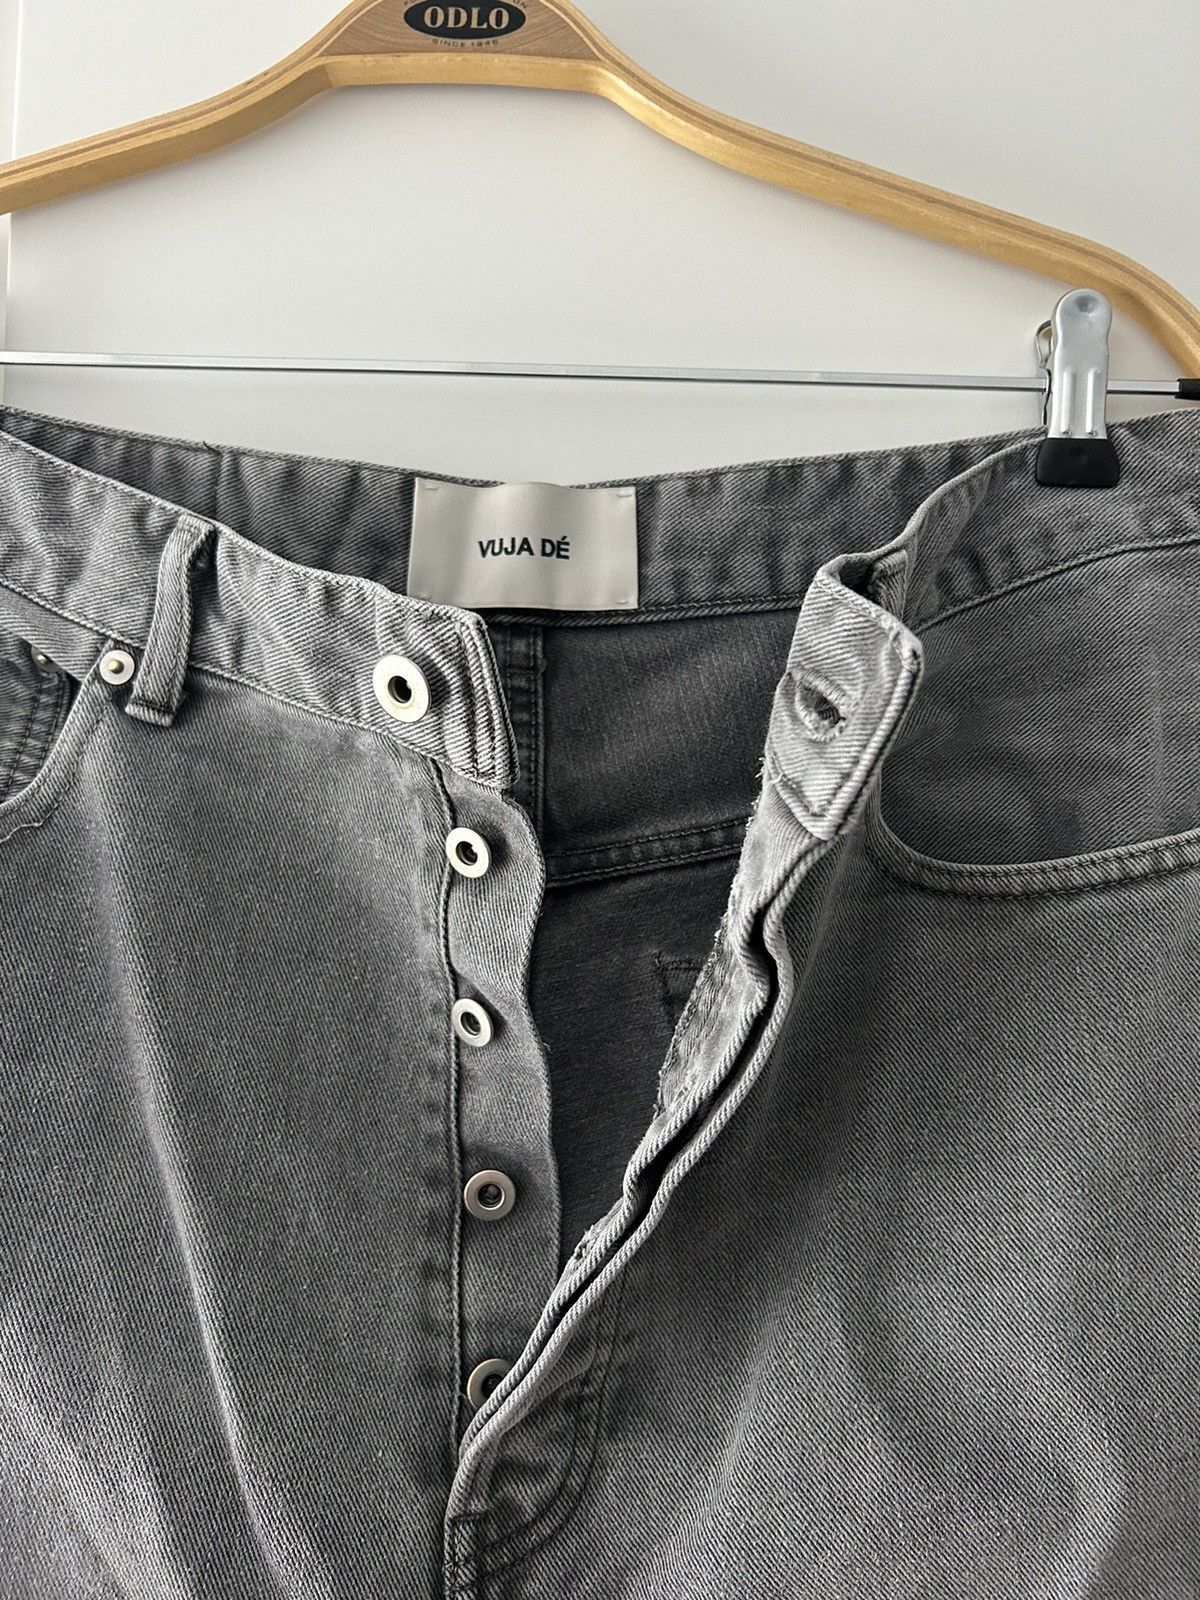 Vuja De Vuja Dé Grey Uneven Dye Denim Pants Size 3 | Grailed